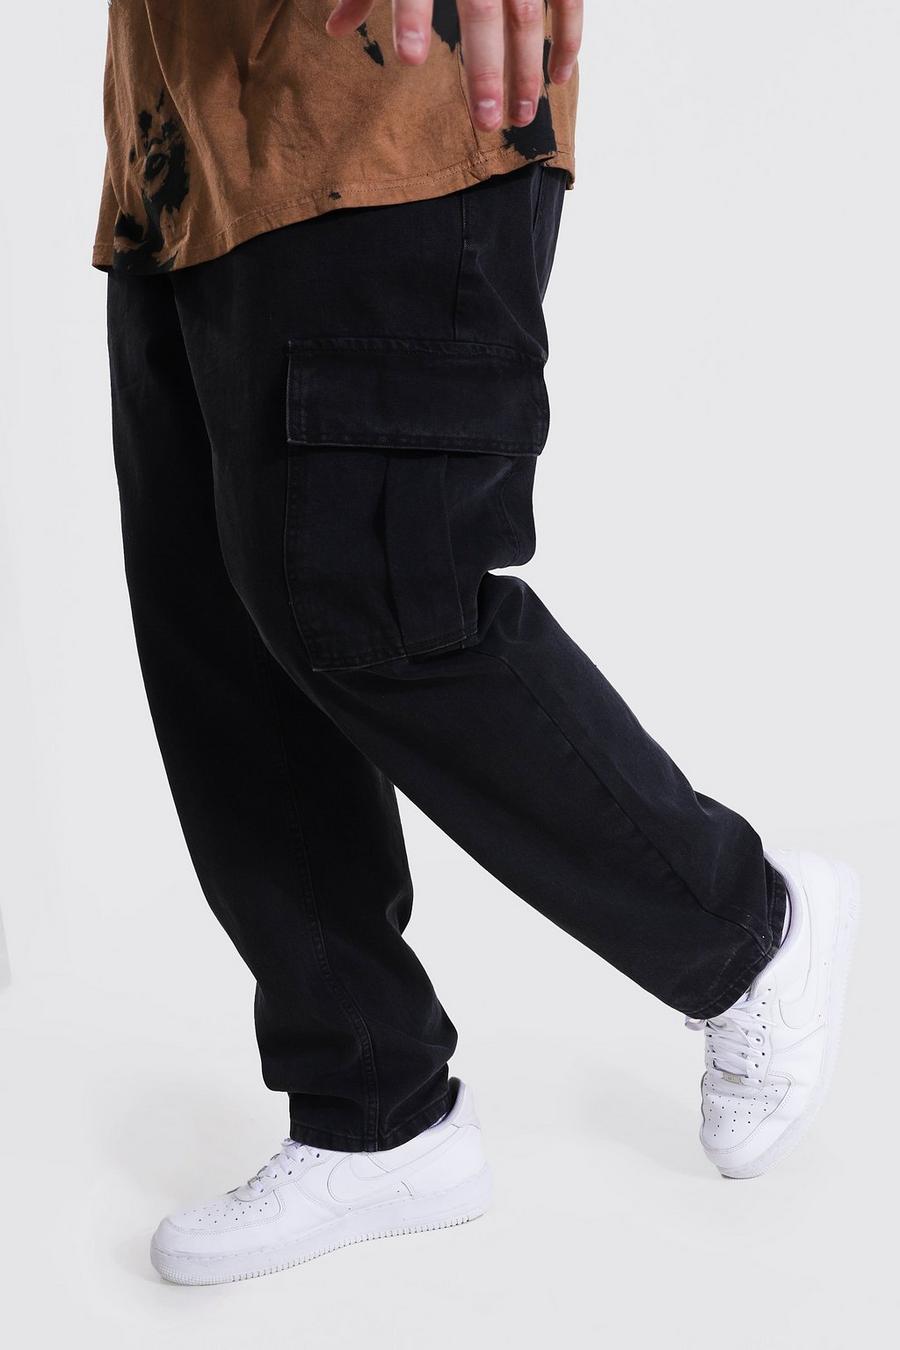 שחור דהוי ג'ינס דגמ"ח בגזרה צרה עם רוכסן בצד המכפלת למידות גדולות image number 1